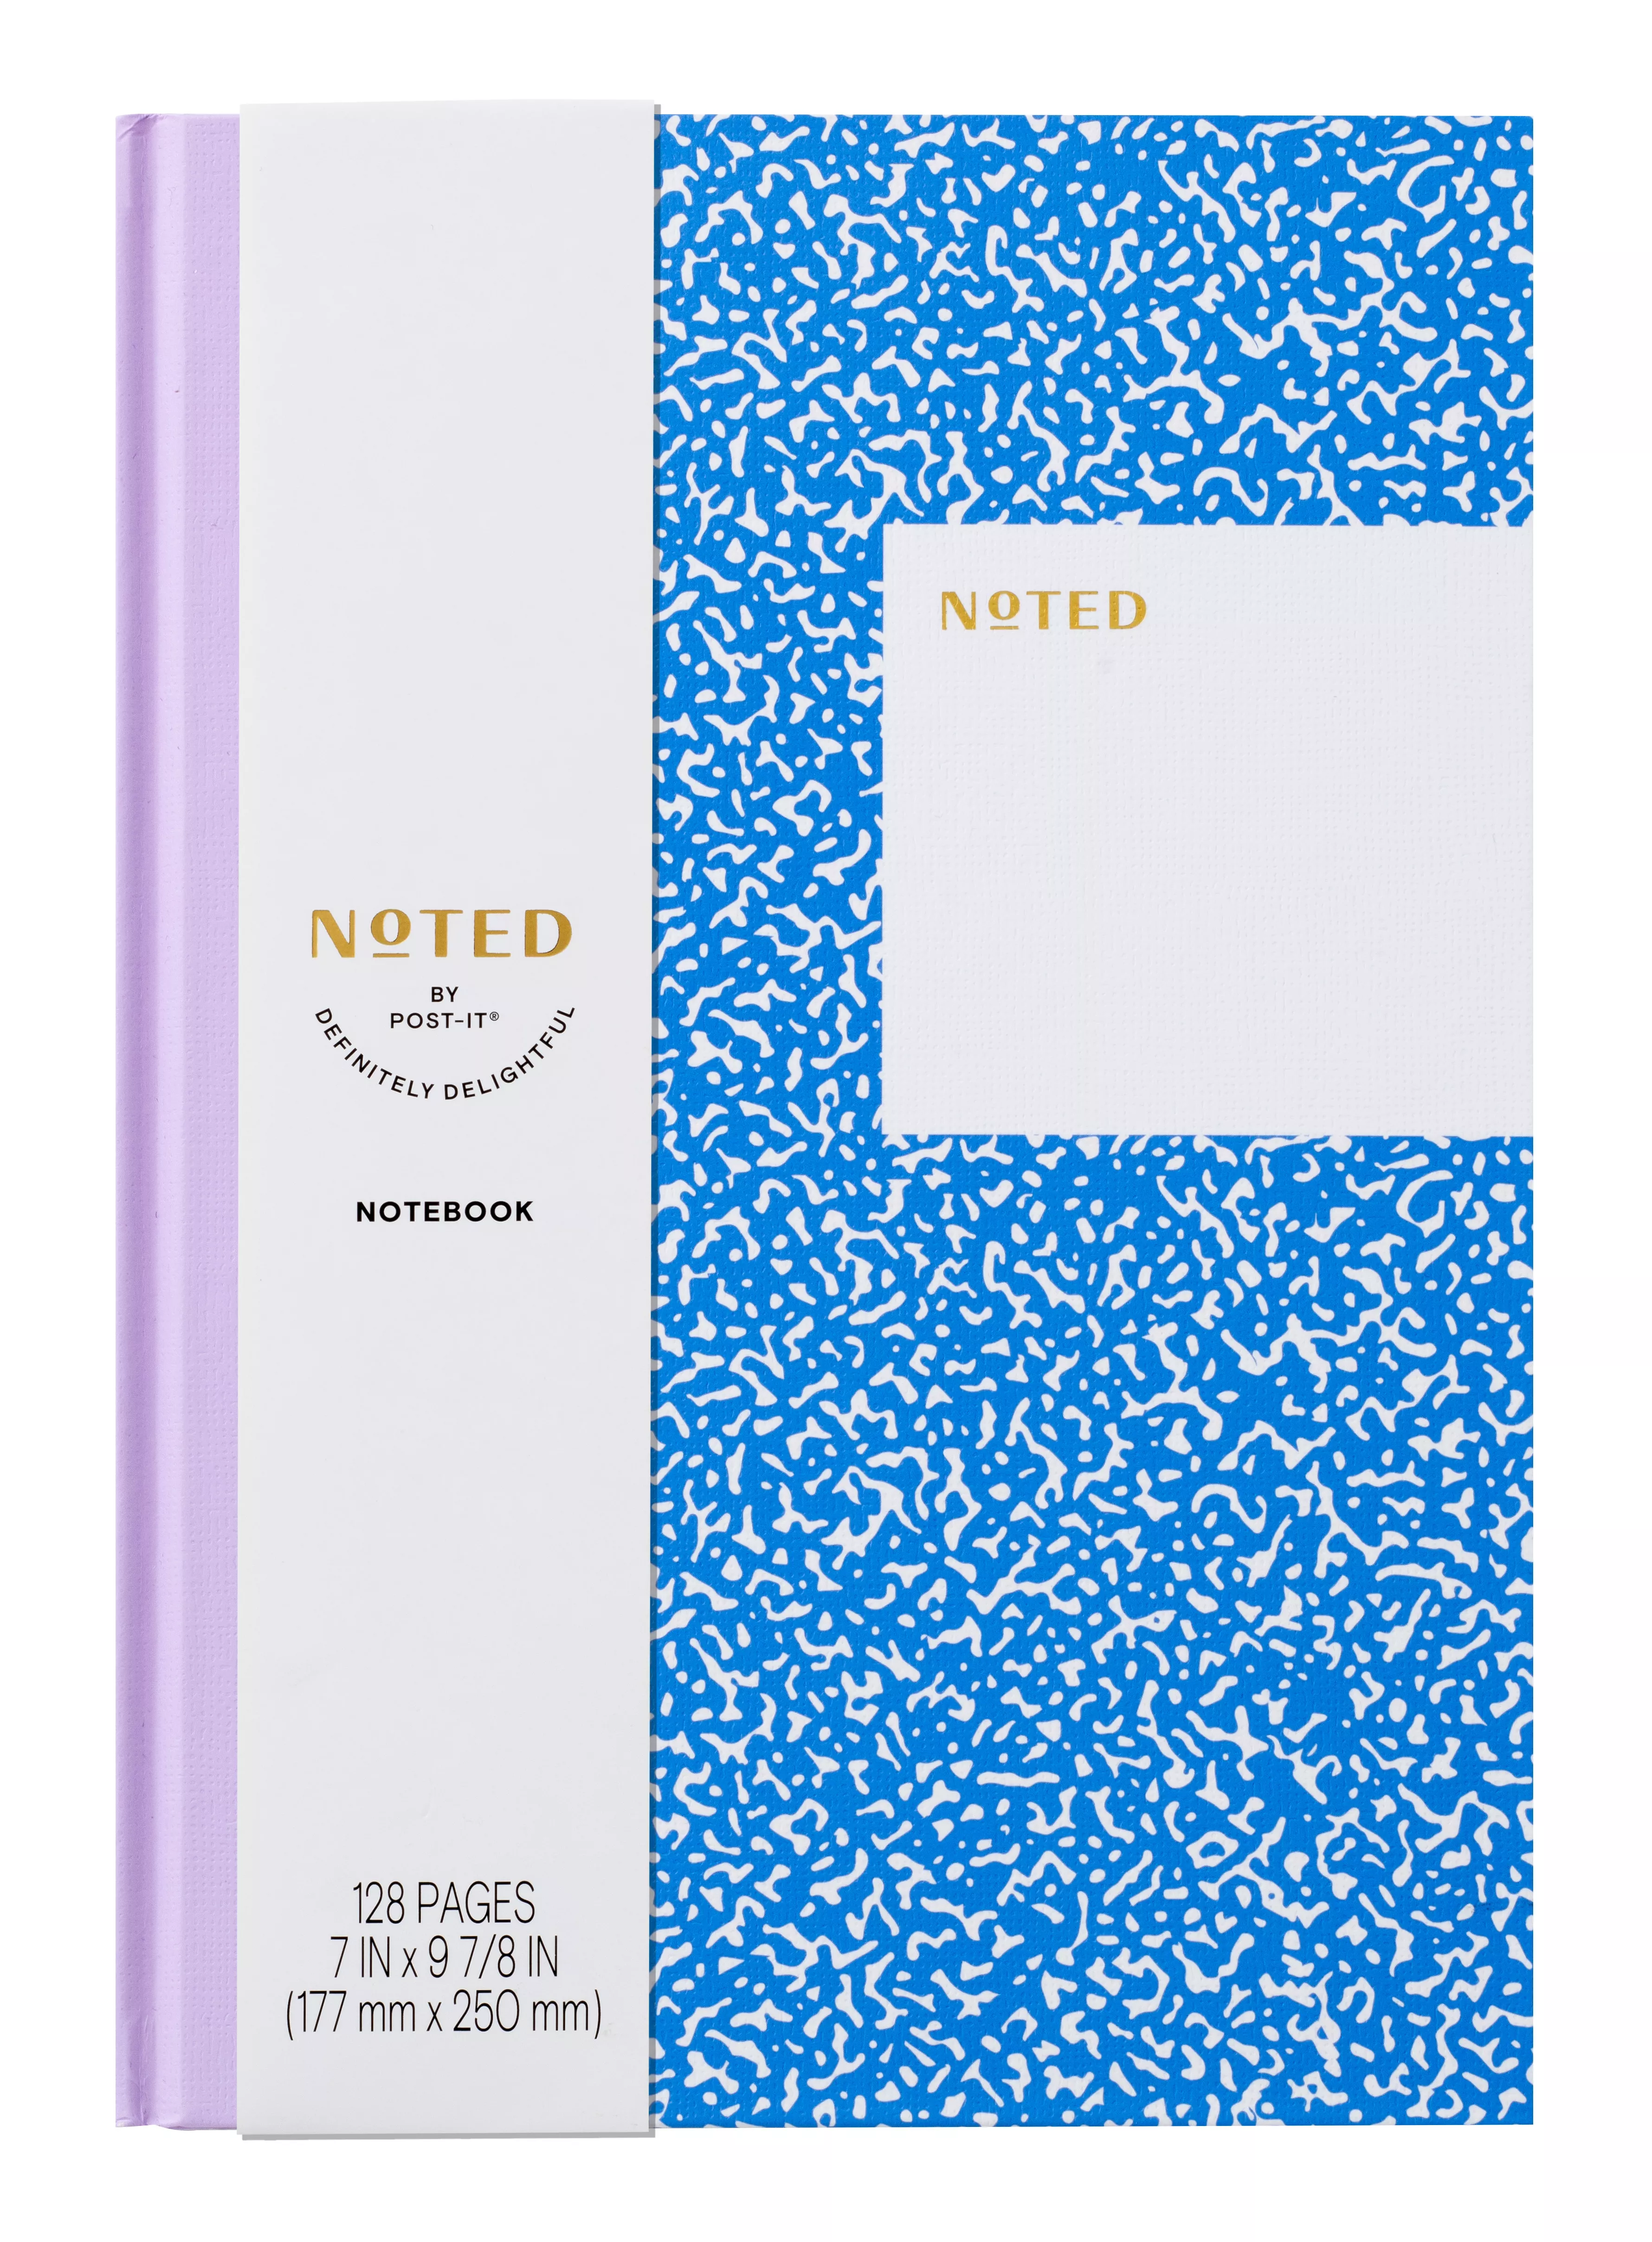 Post-it®) Notebook NTD9-NB-1, 7 in x 9-7/8 in x 5/8 in (177 mm x 250 mm x 15.8 mm)